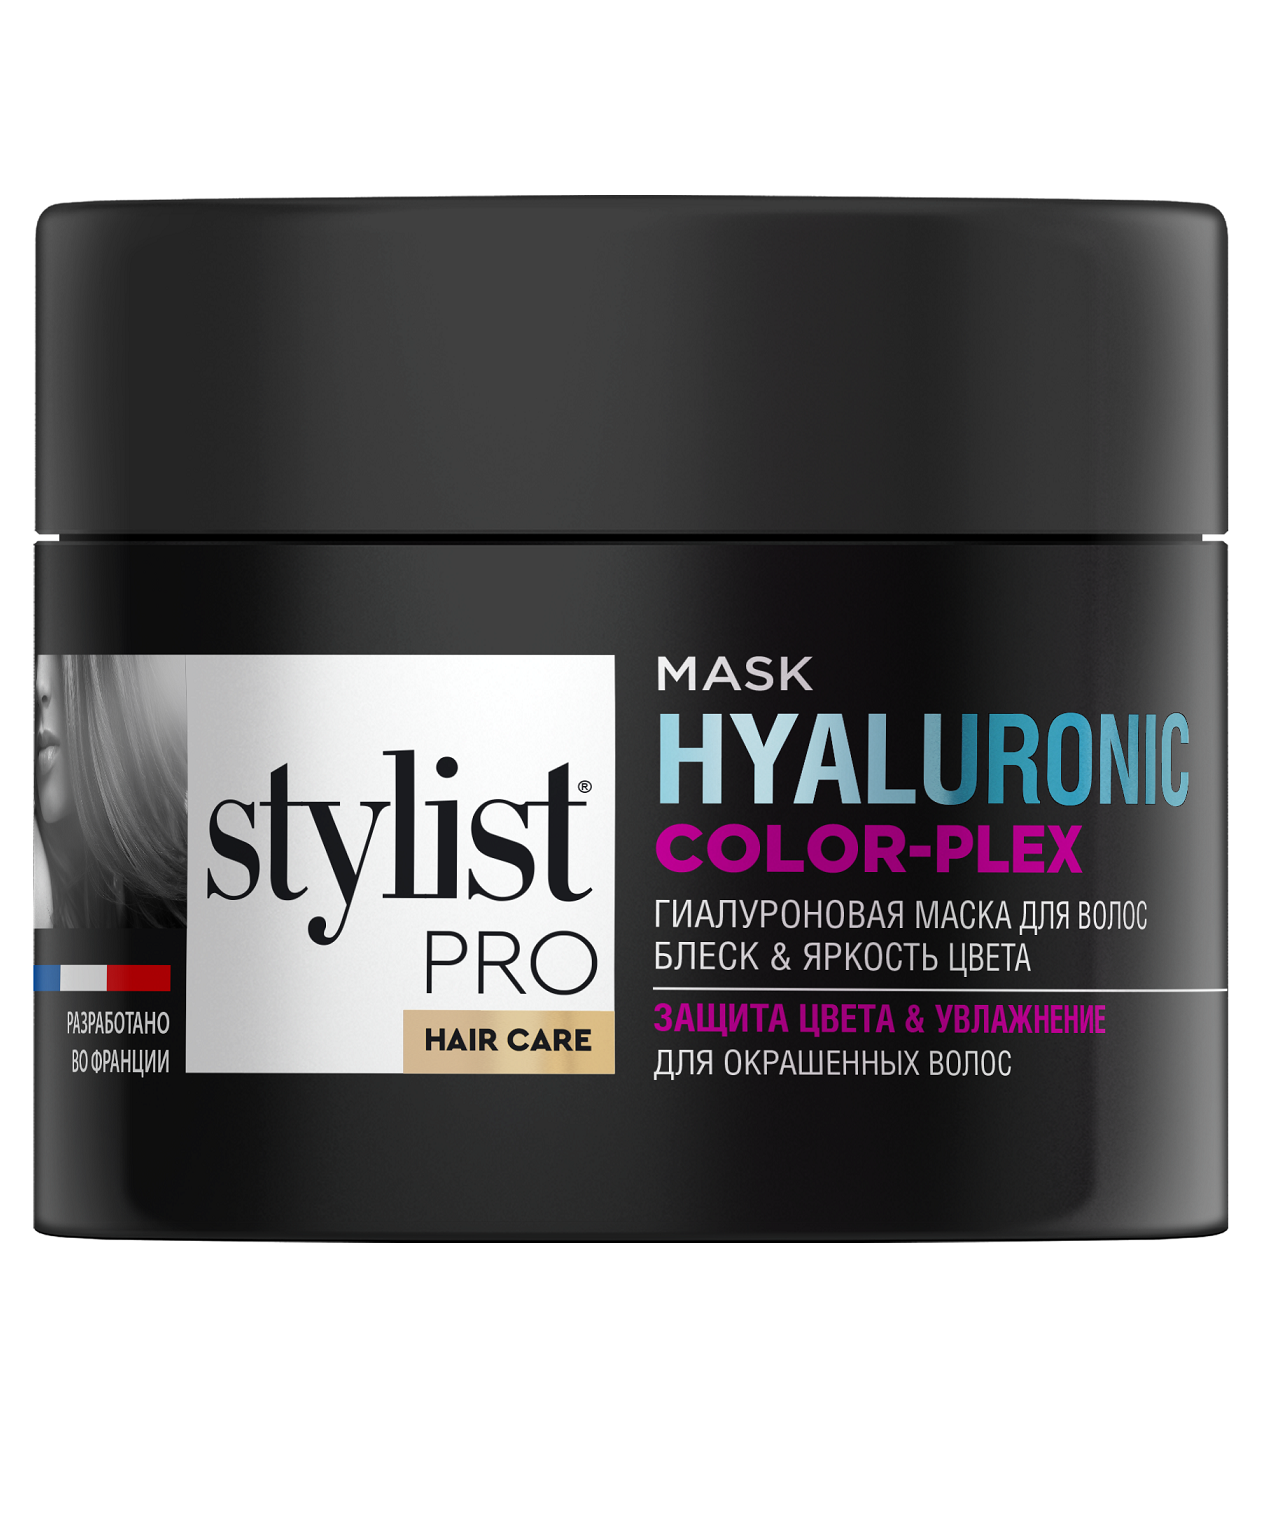 Маска для волос STYLIST PRO hair care Гиалуроновая блеск и яркость цвета 220мл - в интернет-магазине tut-beauty.by